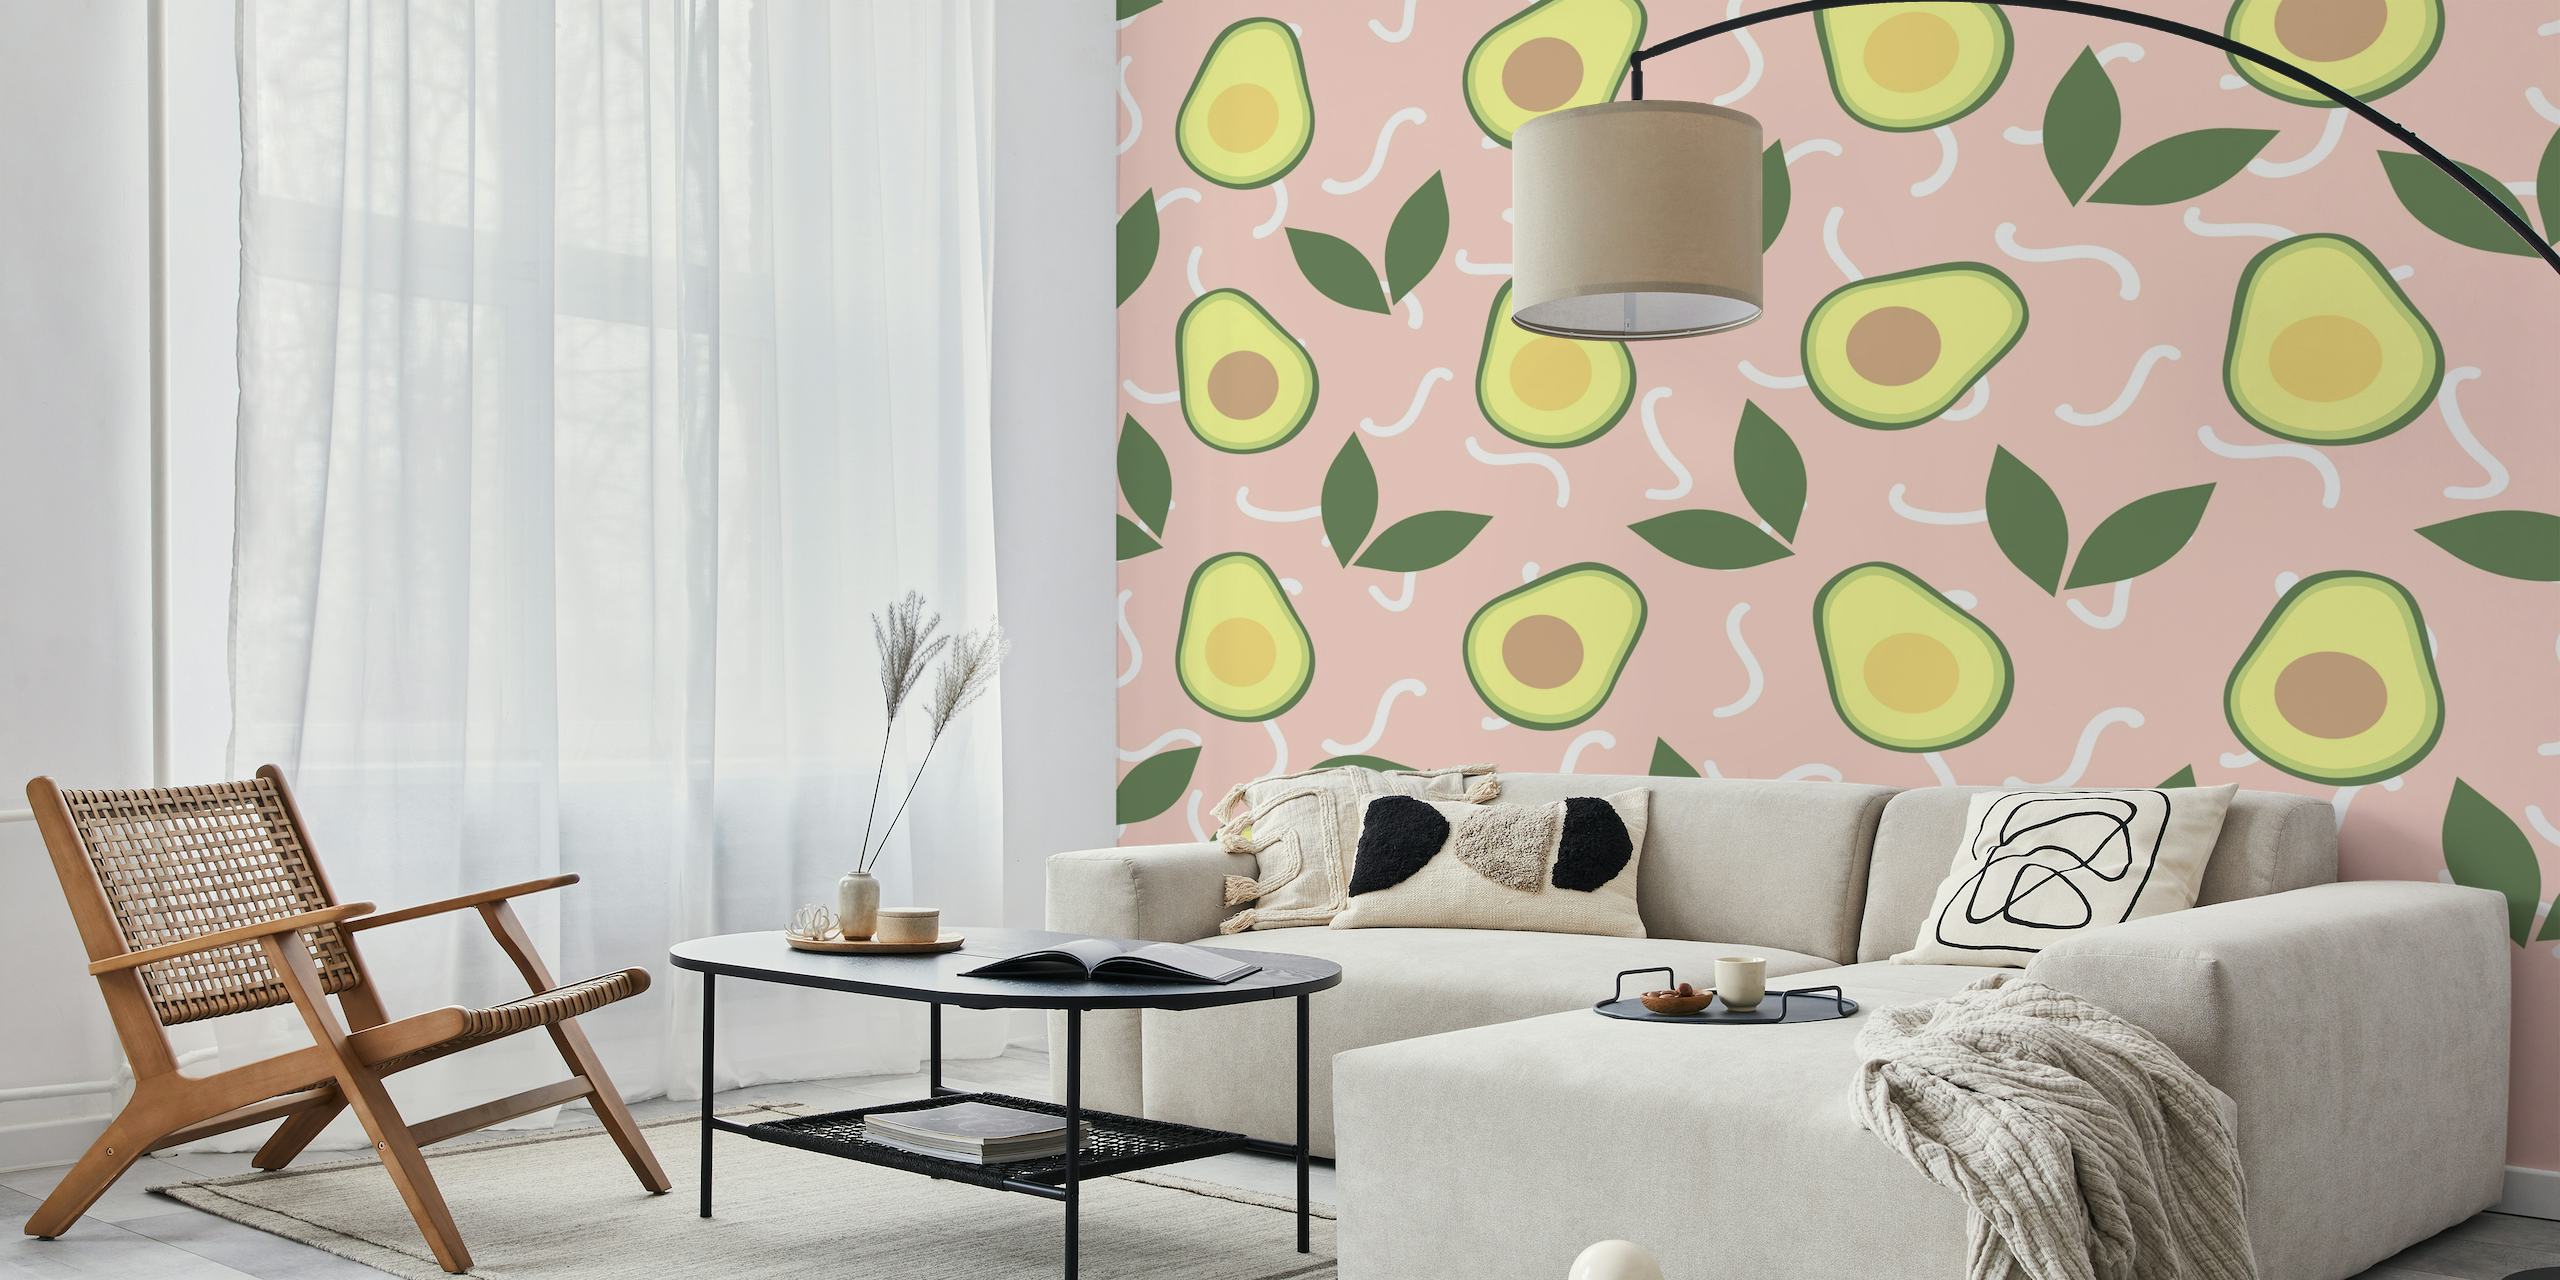 Avocado Fiesta fotobehang met avocado- en bladpatroon op een roze achtergrond.